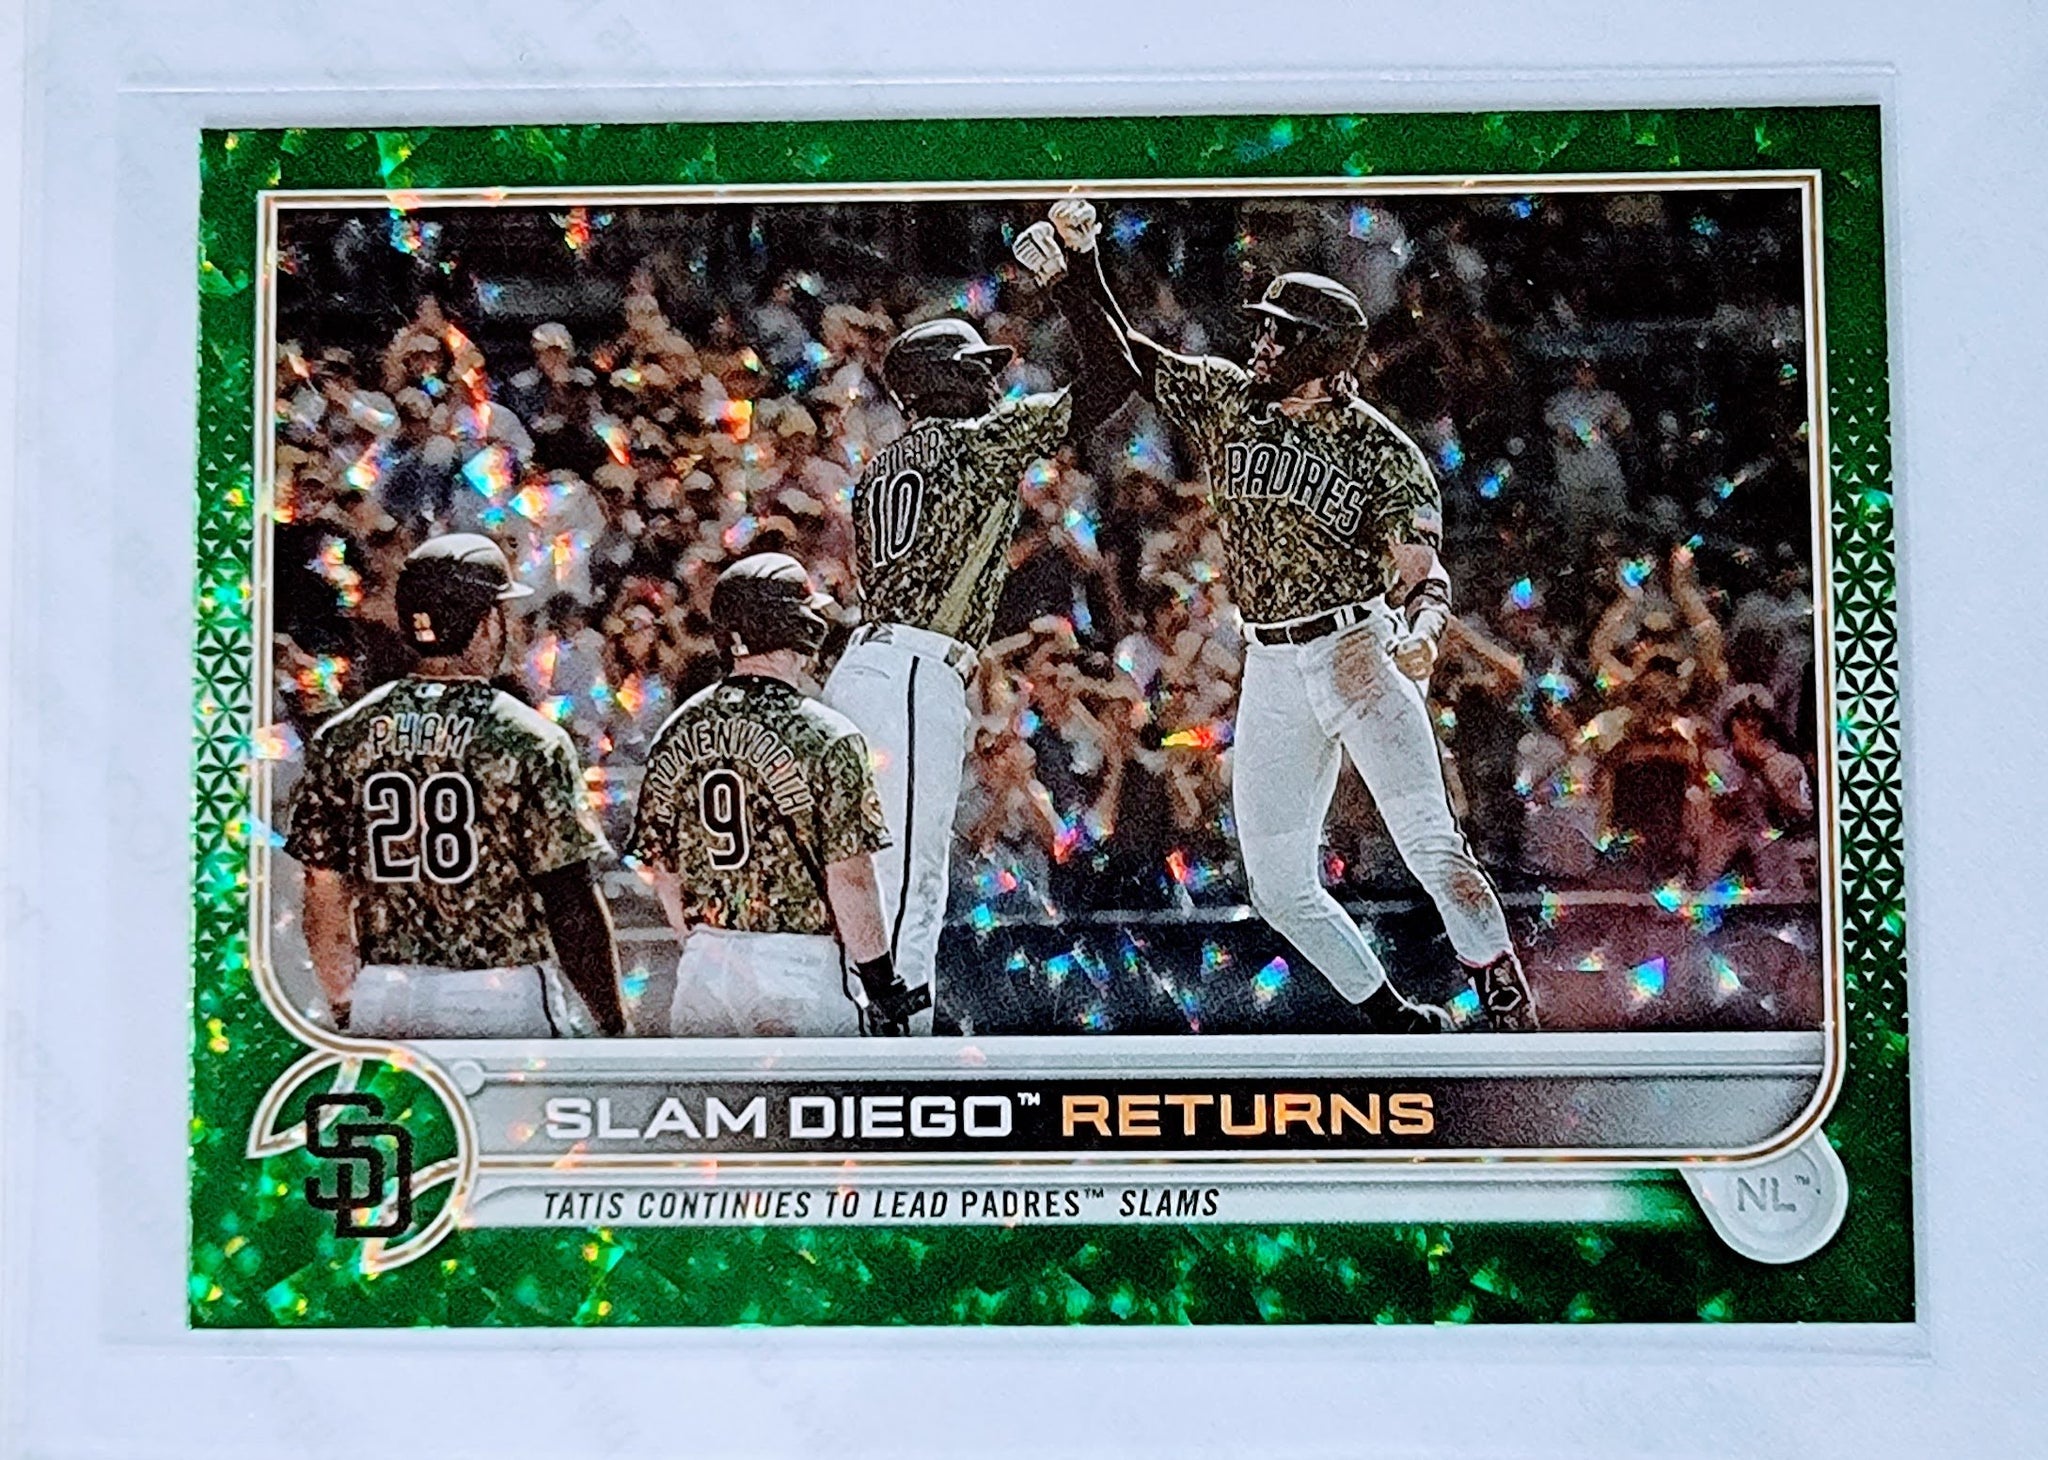 2022 Topps Slam Diego Returns Green Foil Refractor Baseball Trading Card